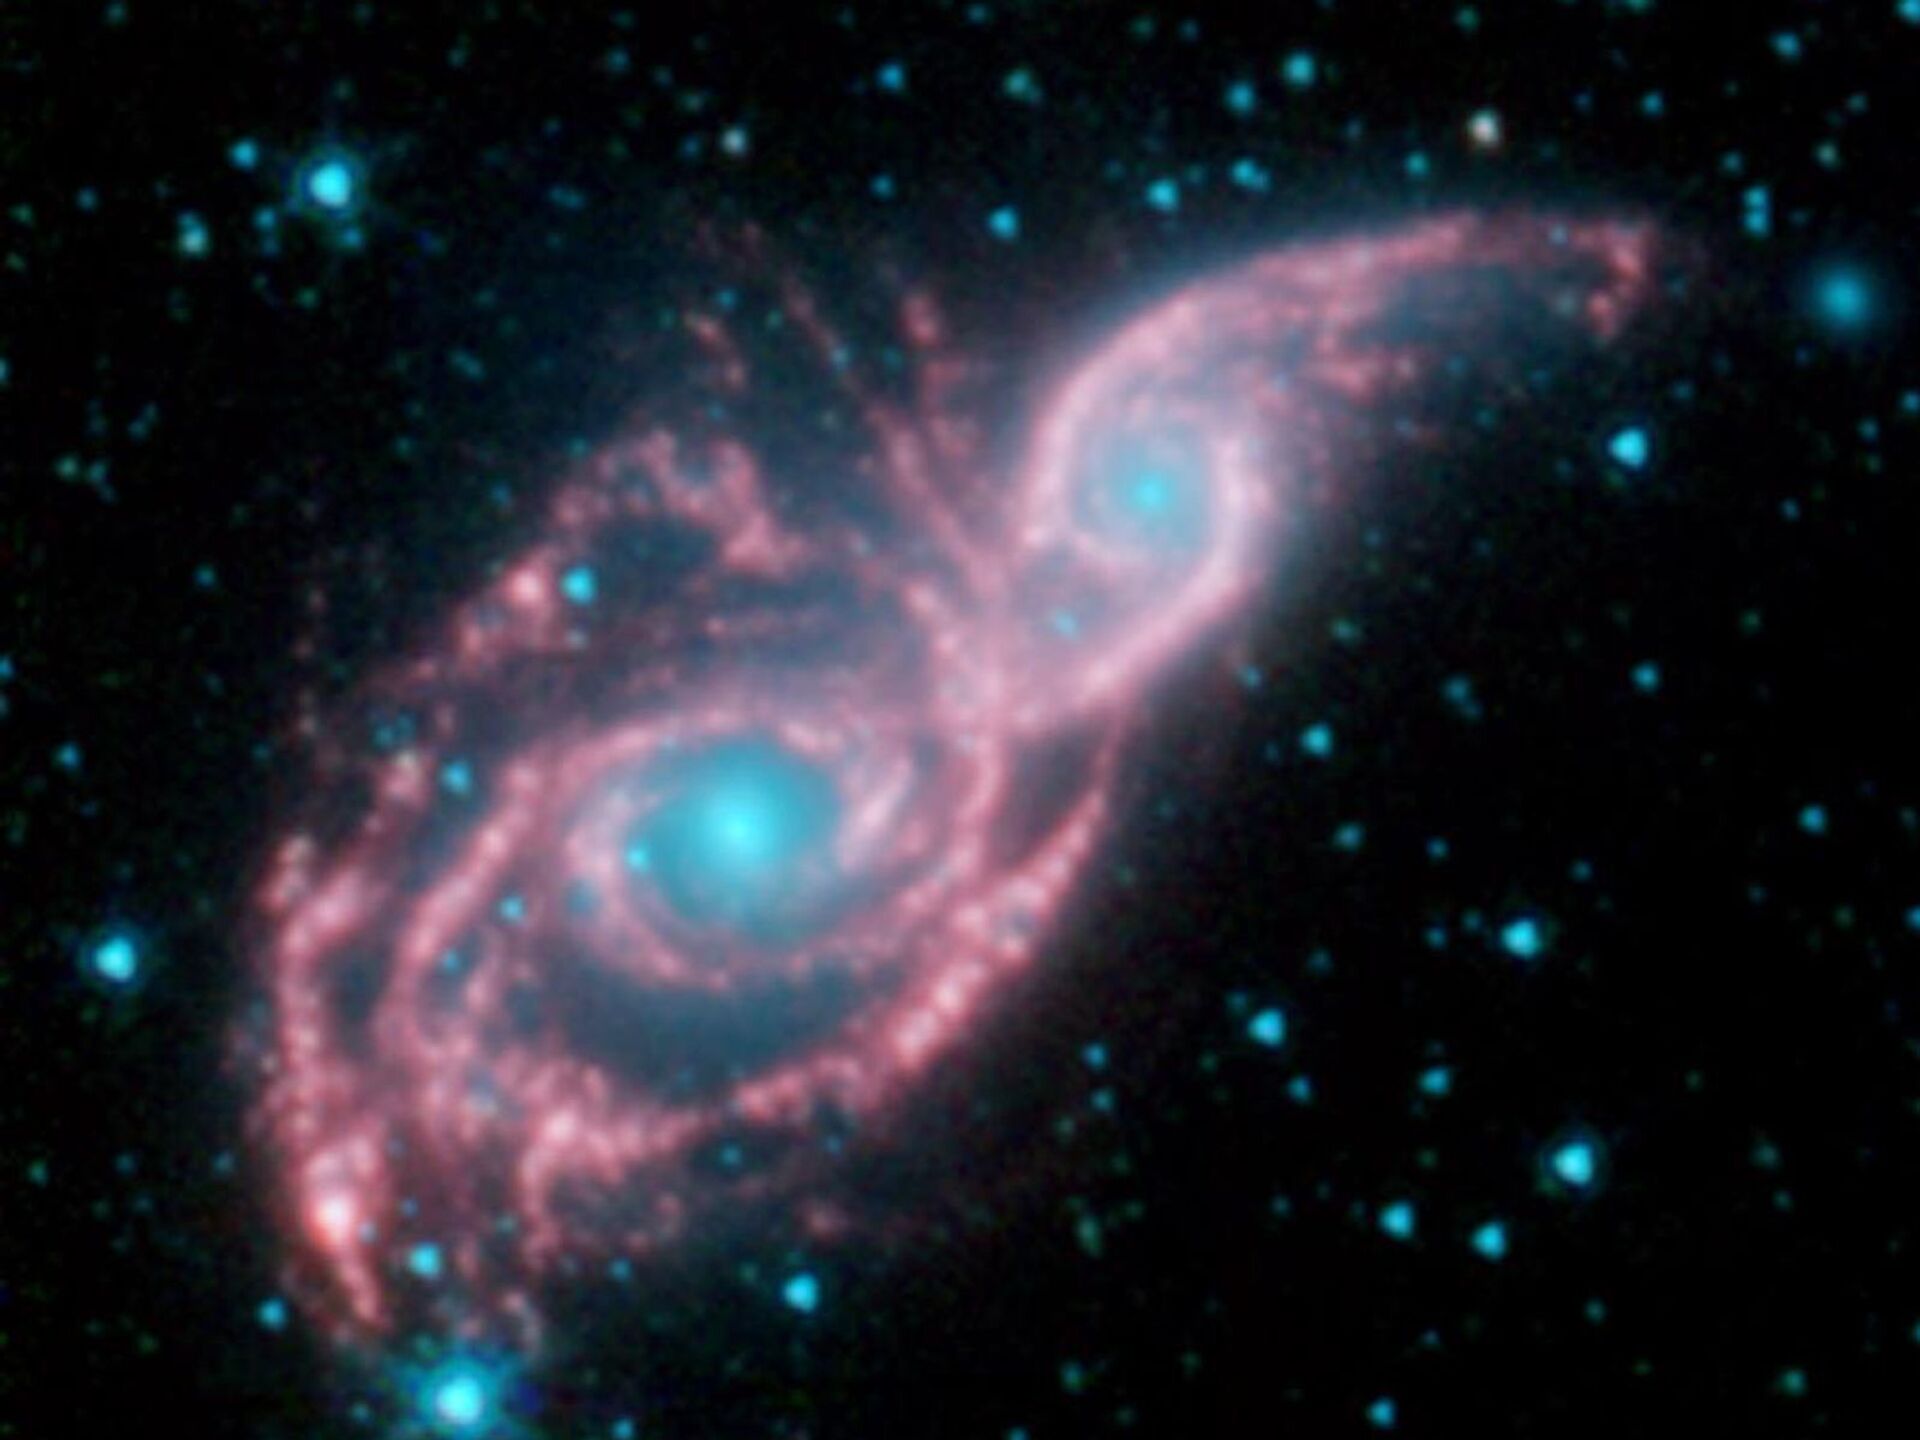 علماء الفلك يرصدون تموجات تشبه “البركة” عبر القرص الغازي لأقدم مجرة حلزونية معروفة